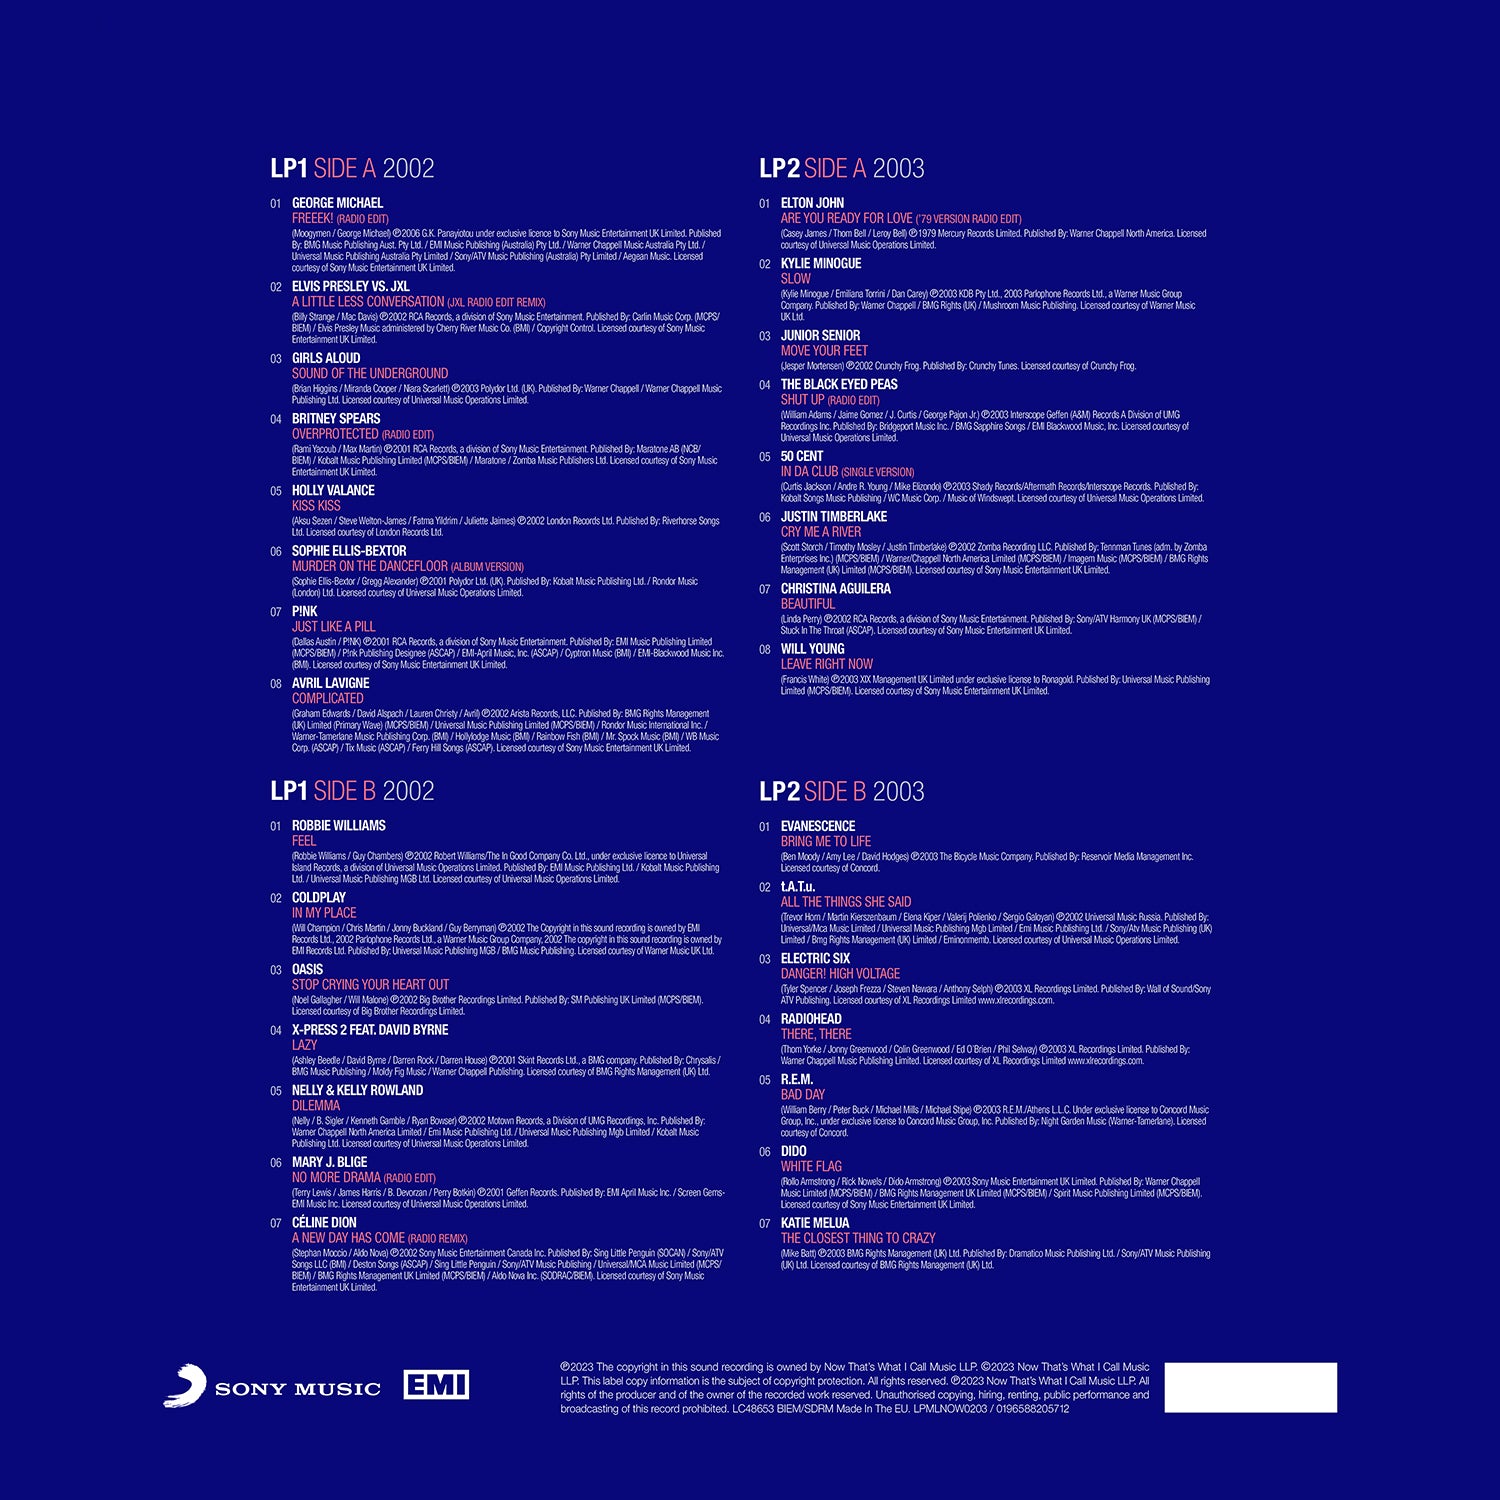 Various Artists - NOW - Millennium 2002 – 2003 (2LP)